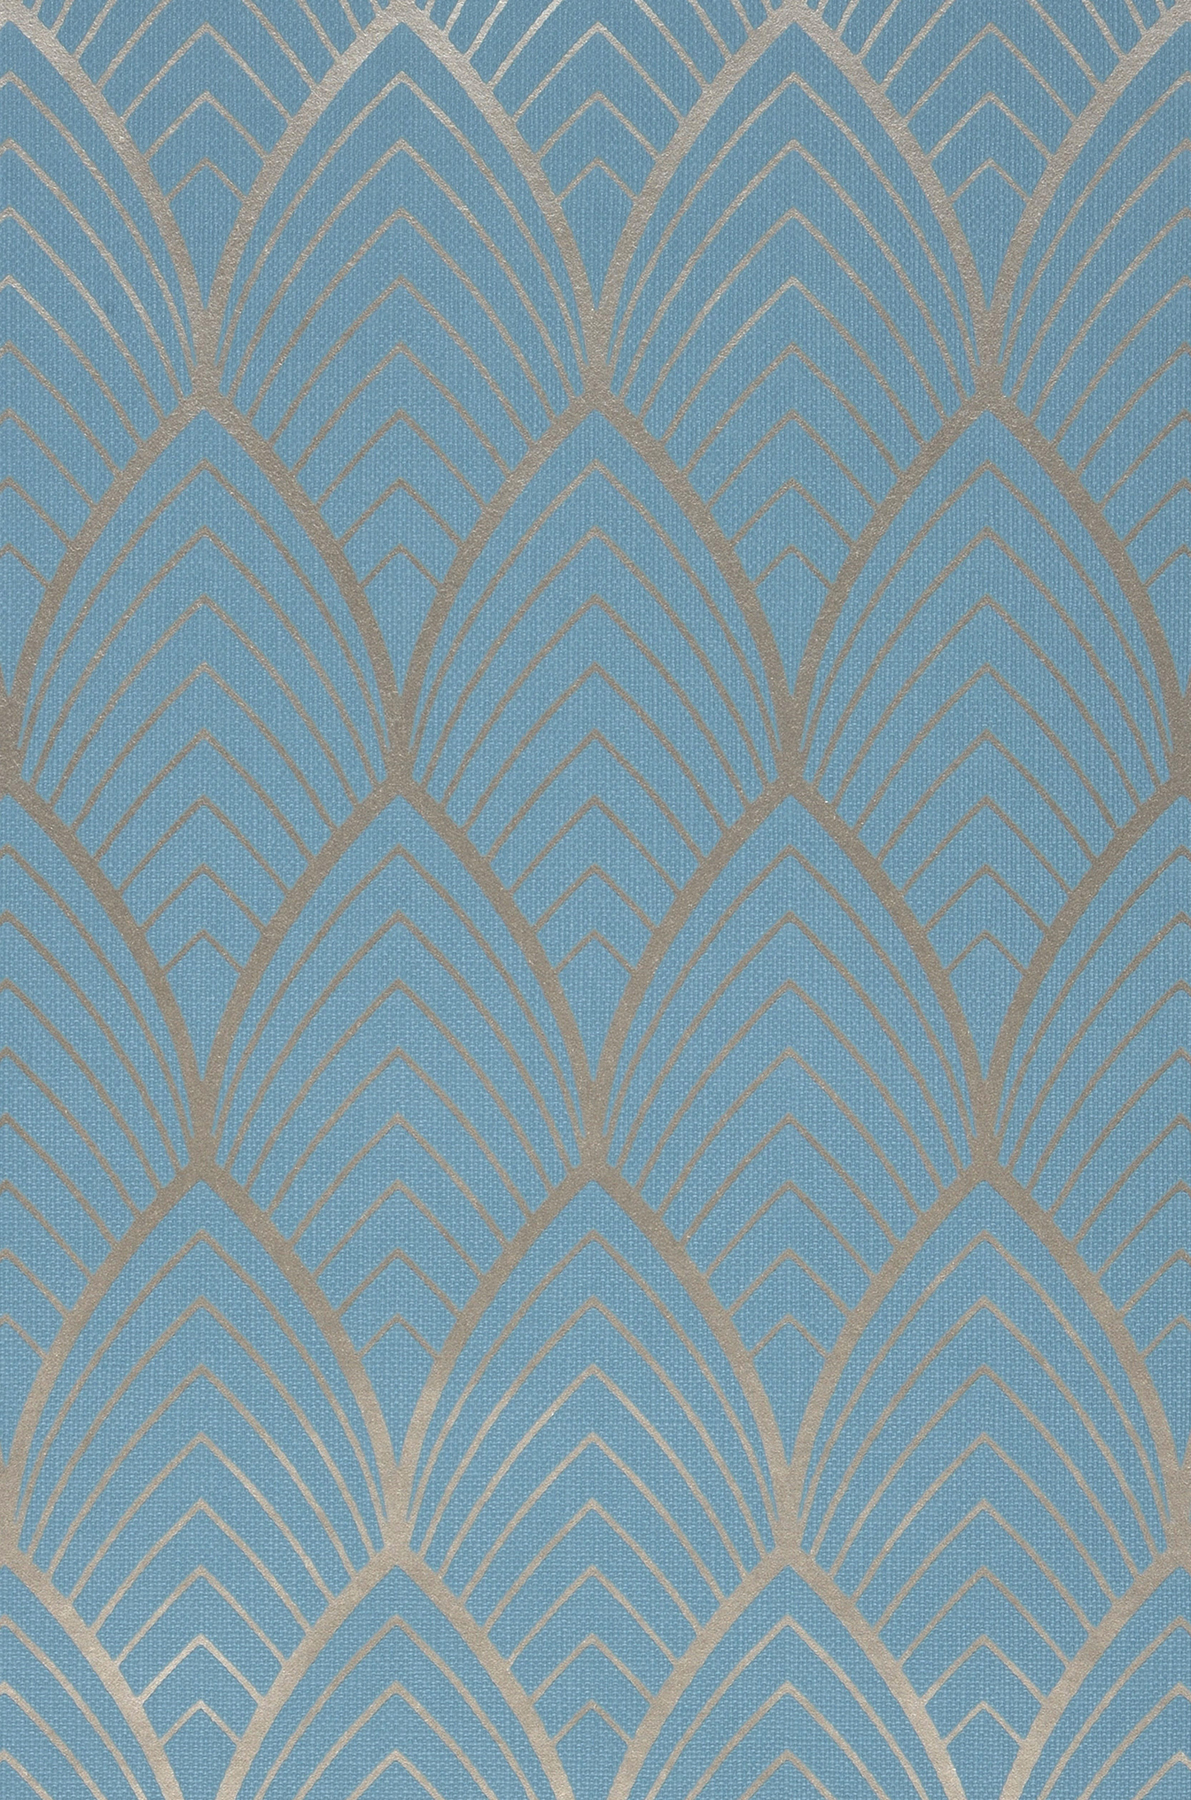 Wallpaper Soana light blue